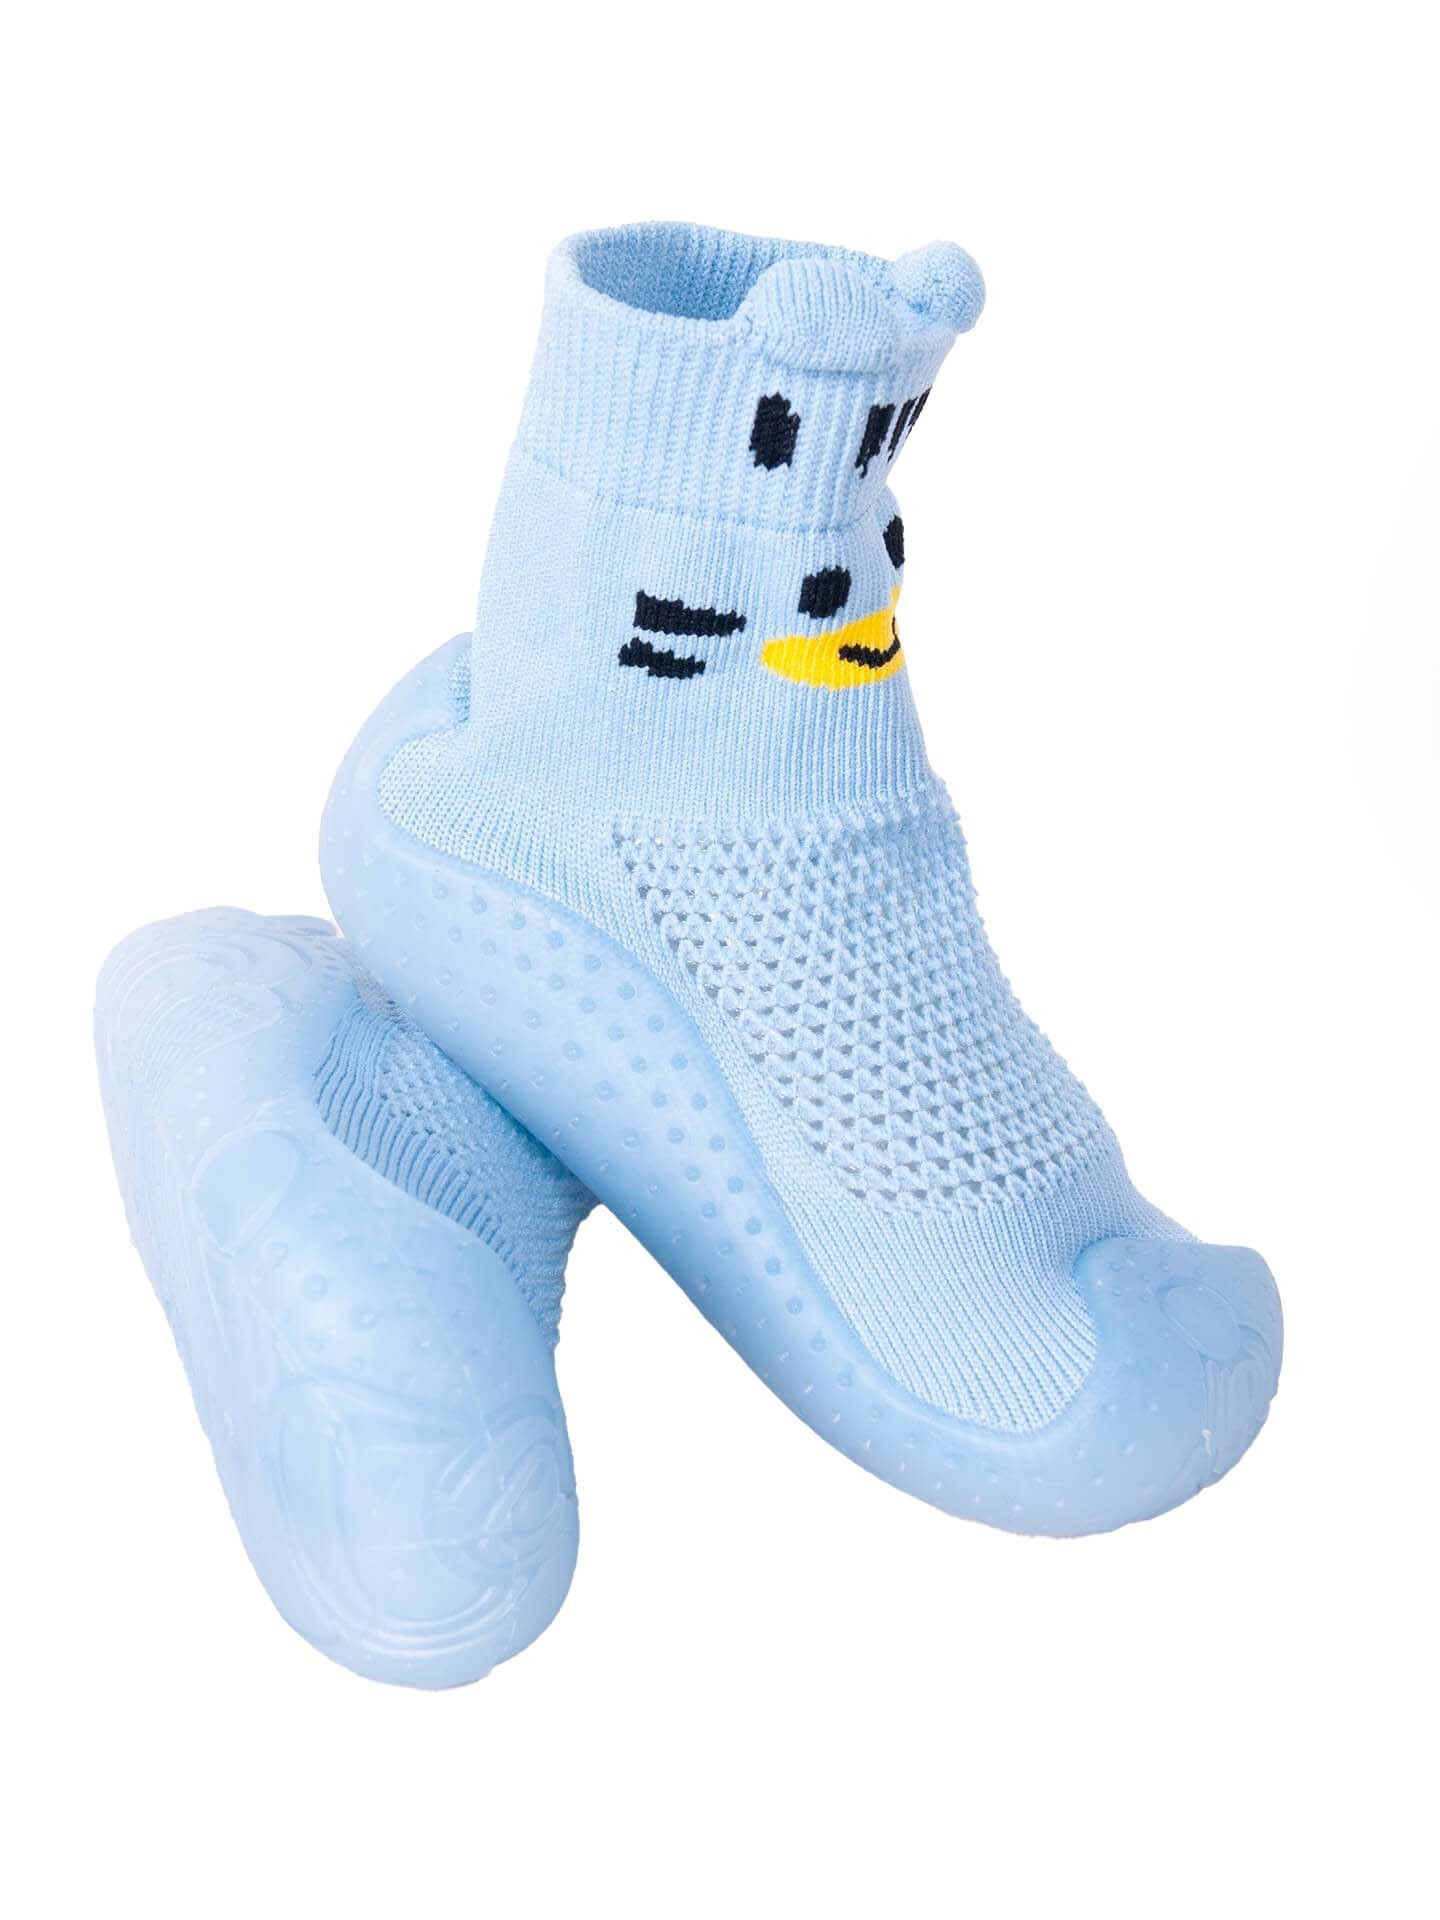 Yoclub Baby Boys' Anti-skid Socks With Rubber Sole OBO-0171C-1500 Blue 23